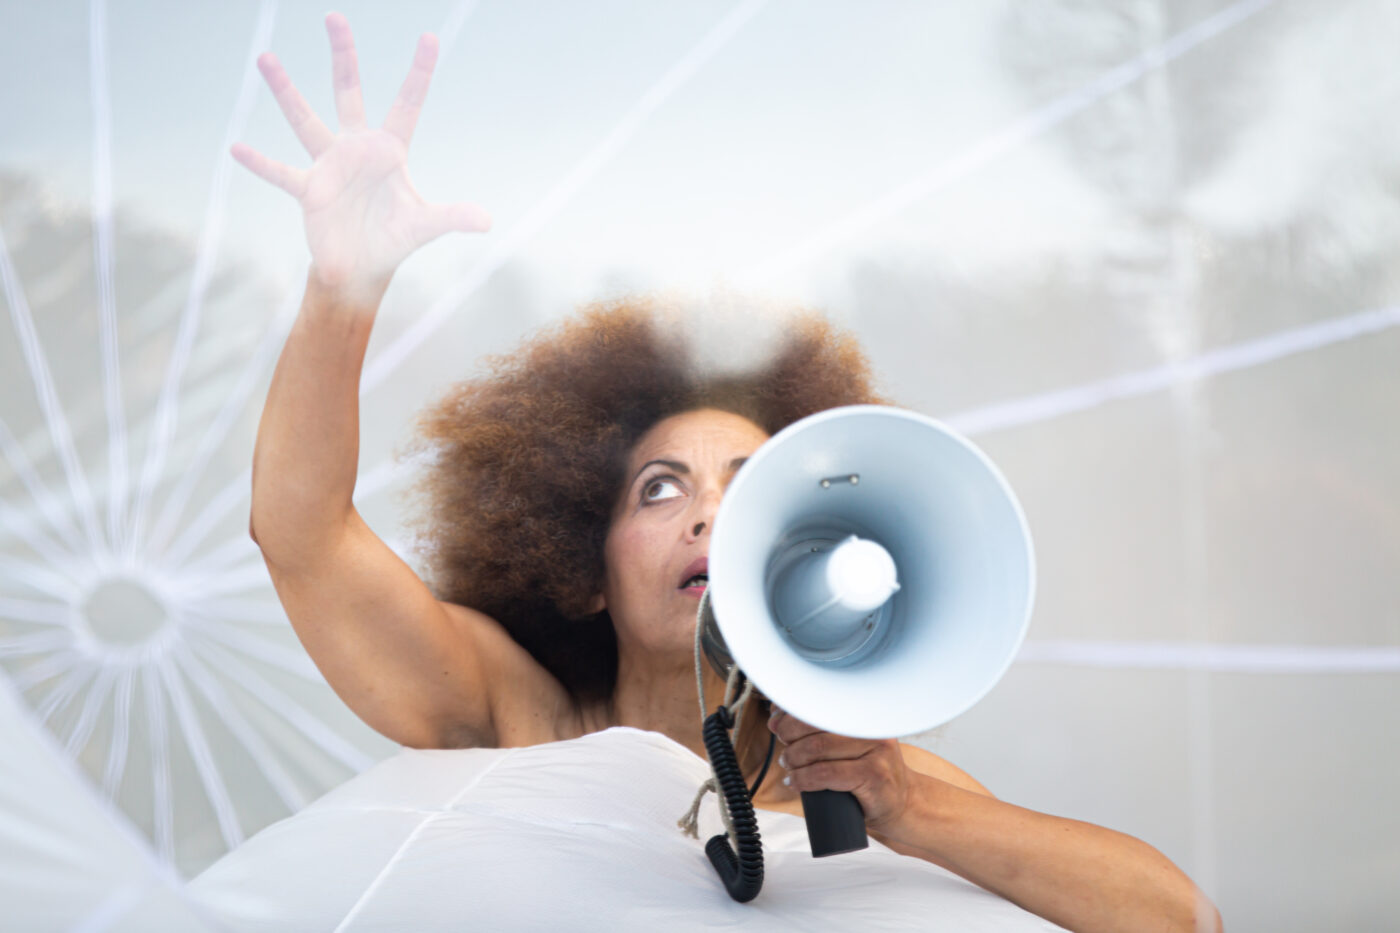 Vrouw met een witte megafoon kijkt bezorgd omhoog, beeld uit theatervoorstelling Stay Out van collectief Plastique Fantastique, Oerol 2022.